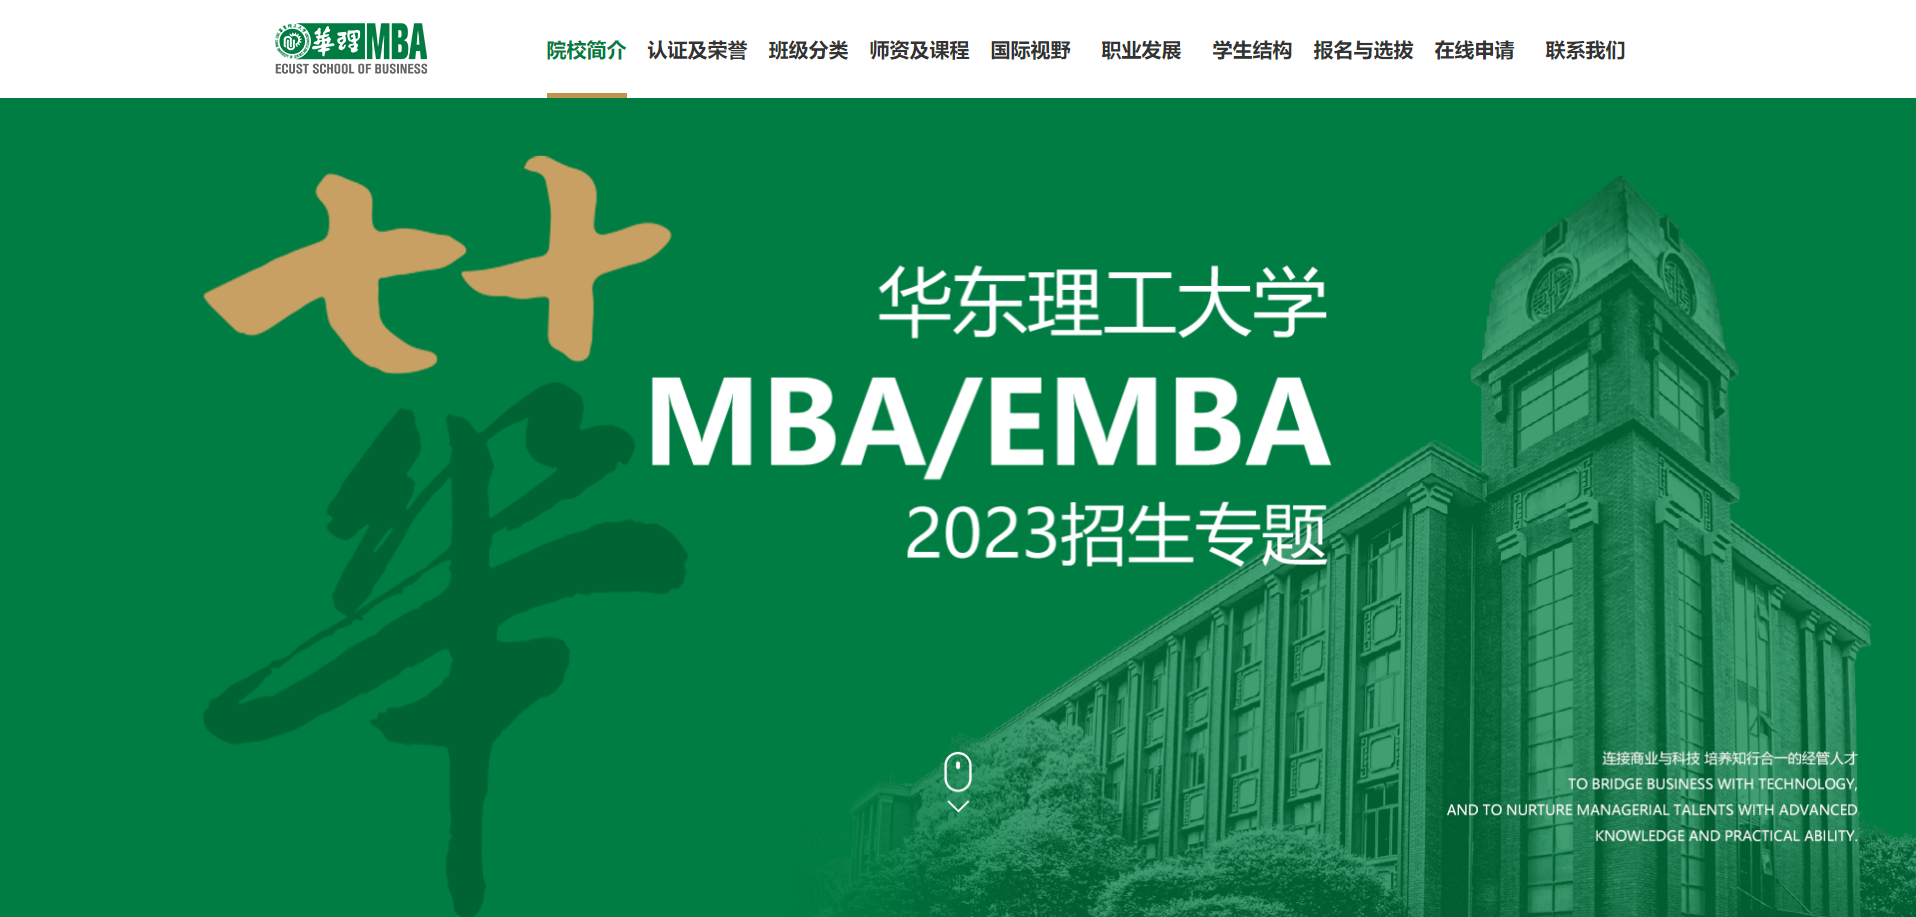 一个专题带你全方位了解华理MBA/EMBA最新招生详情